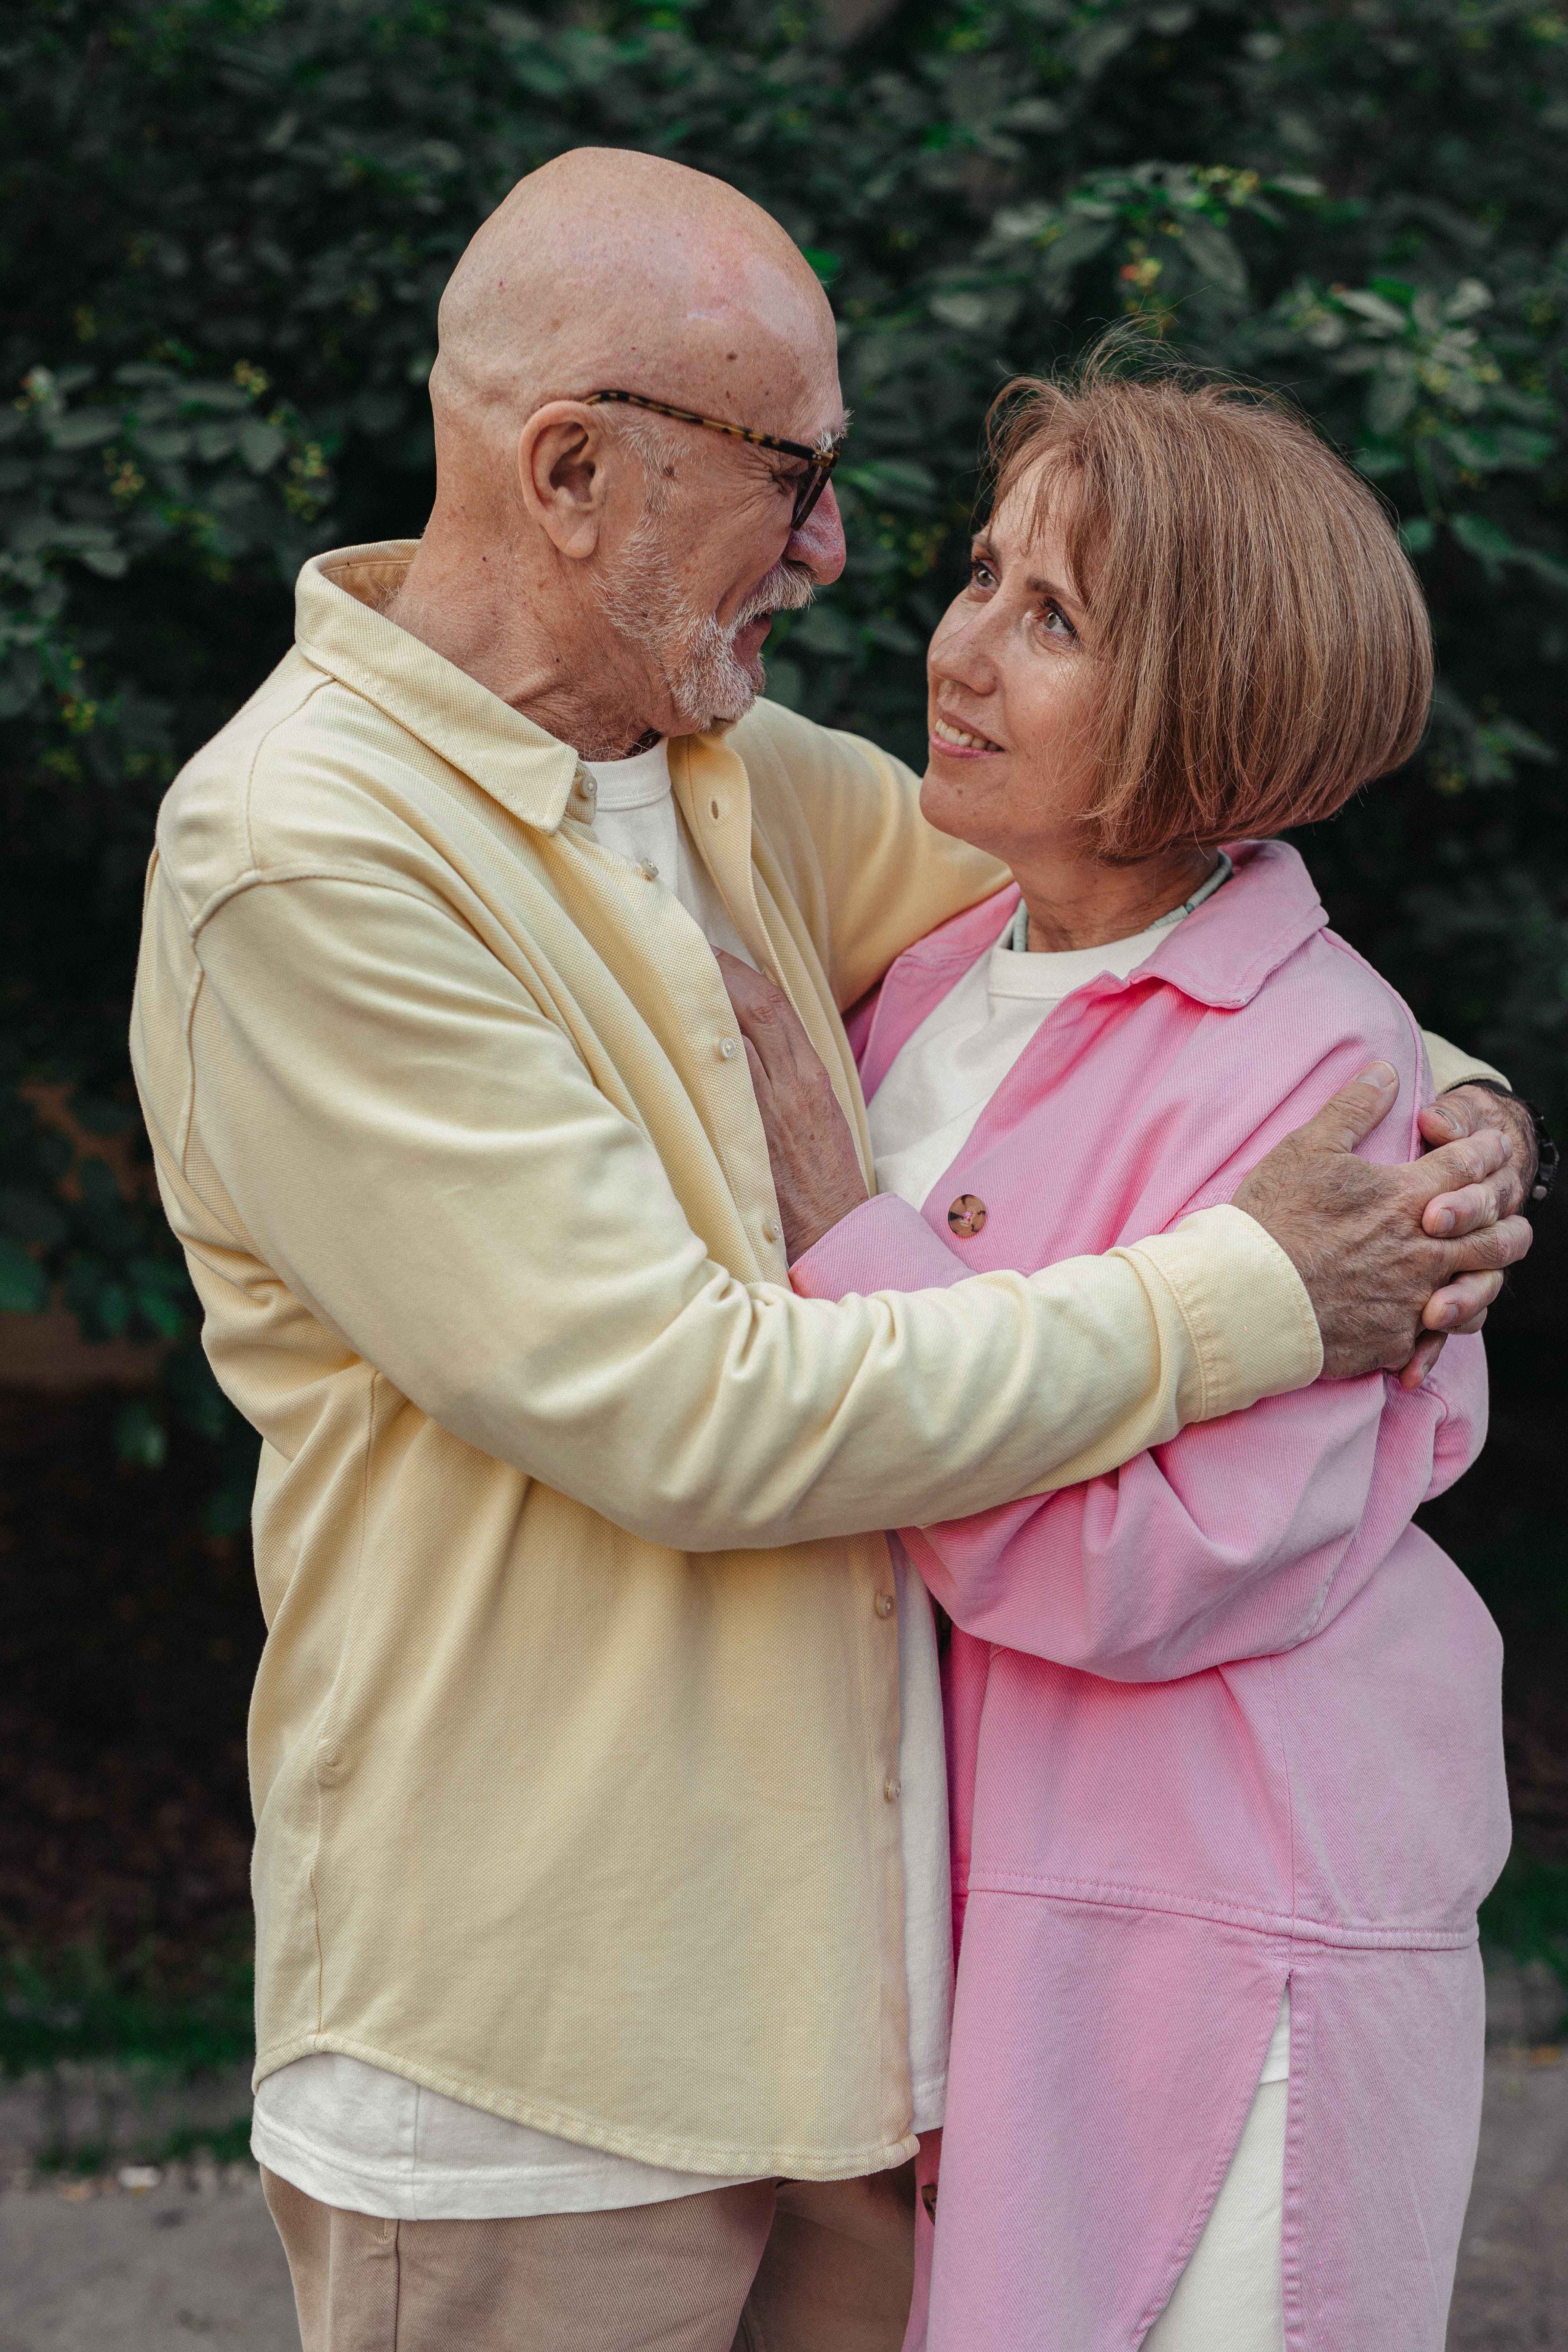 Ein älteres Paar, das sich umarmt und gegenseitig anschaut | Quelle: Pexels